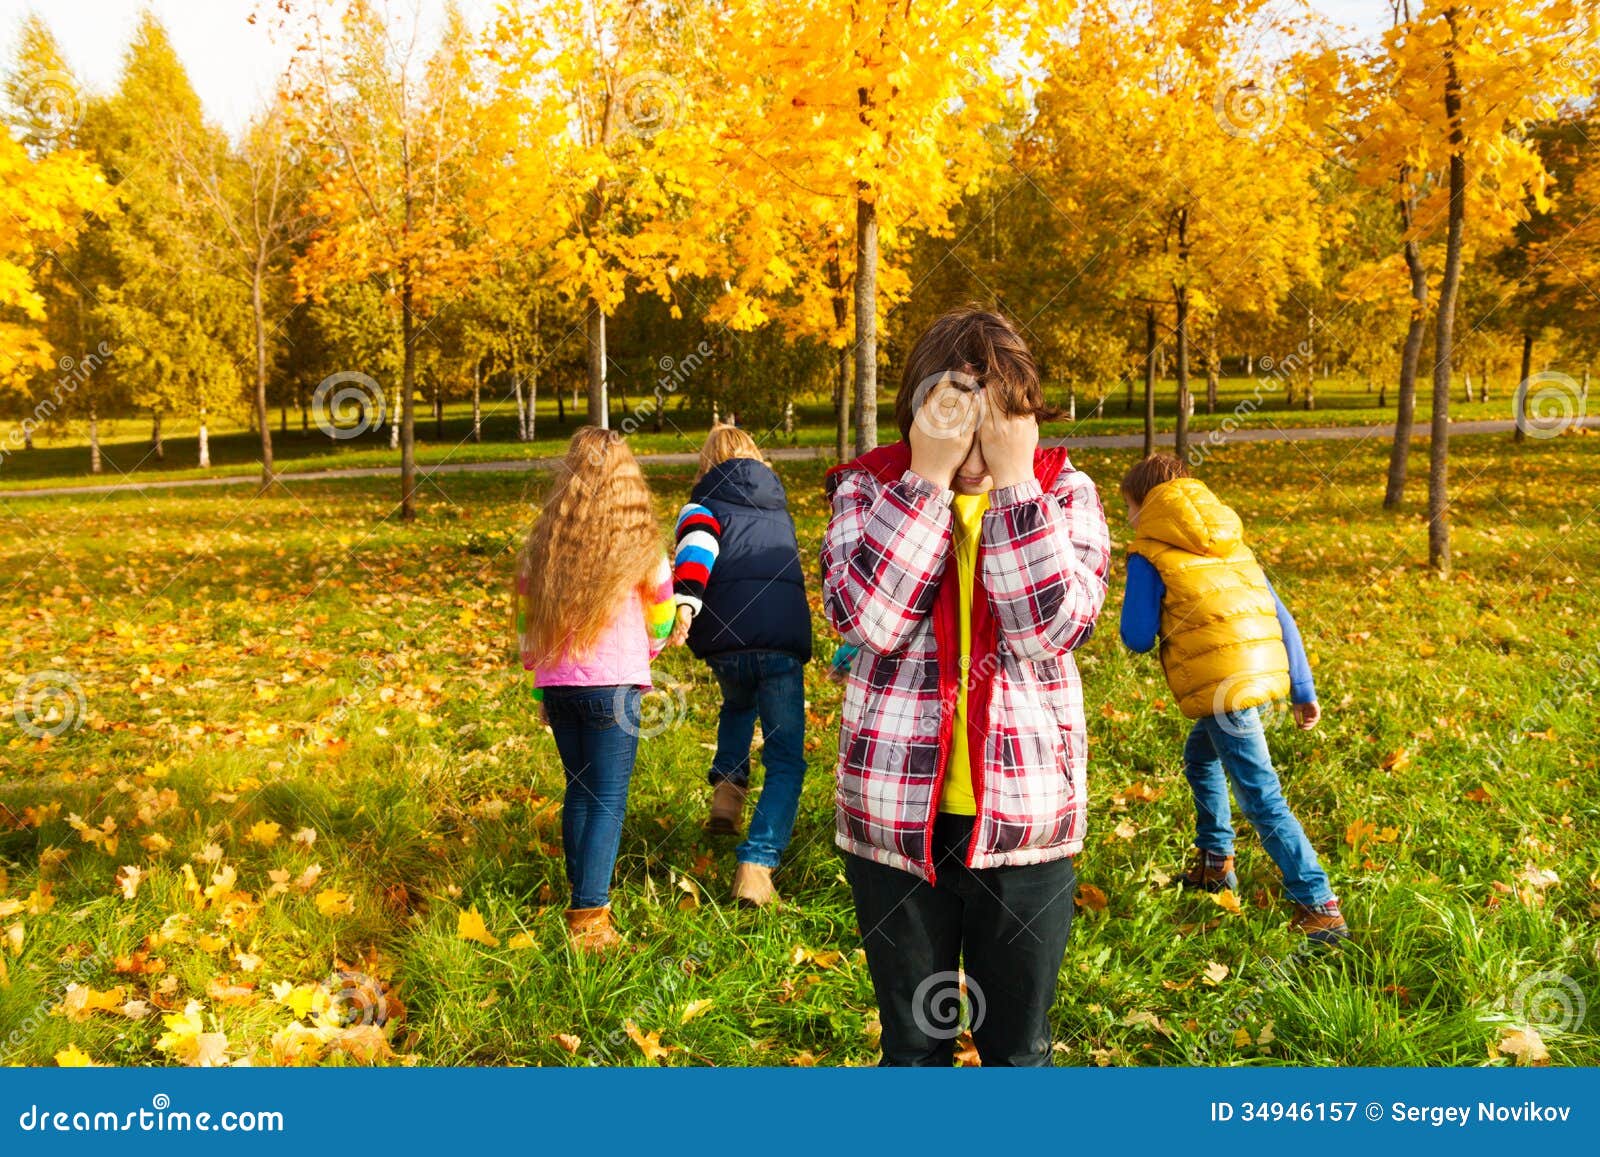 Гулять в прятки. Игры для детей летом и осенью. Осенние летние игры фото. Играют летом и осенью. Уличные игры осенью.